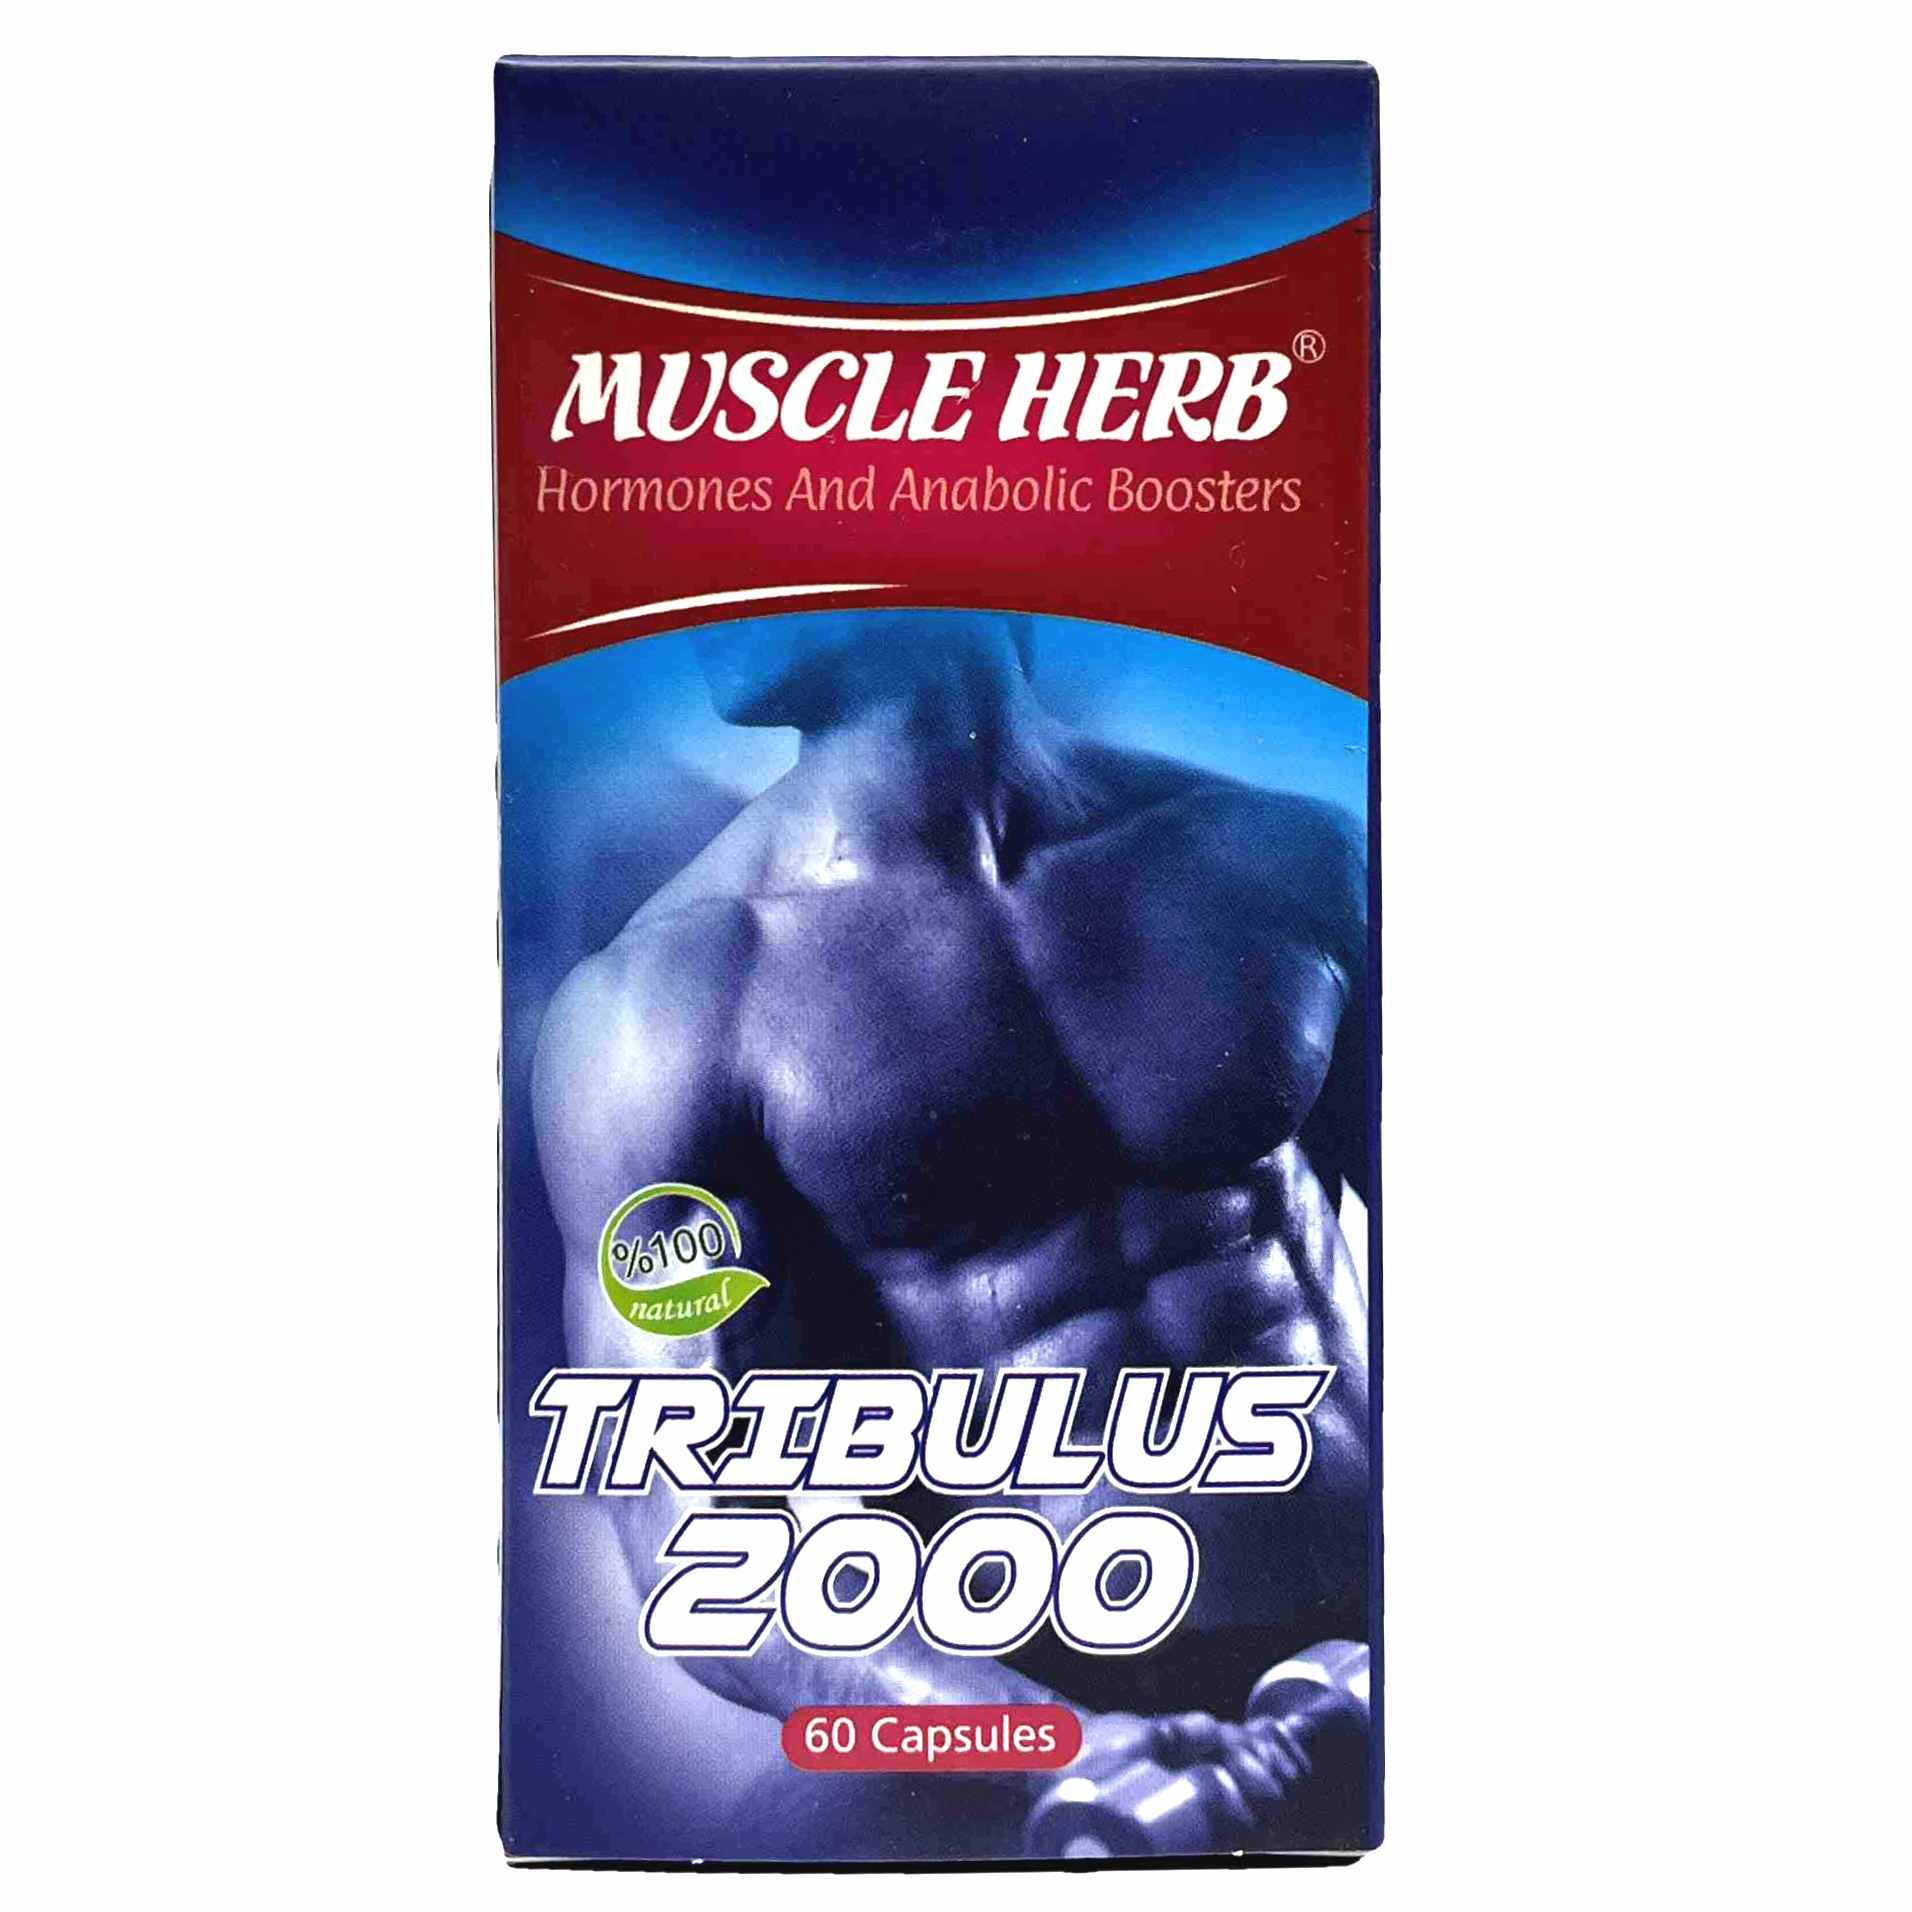 کپسول تریبولوس ماسل هرب بهتا دارو افزایش هورمون های مردانه Muscle Herb